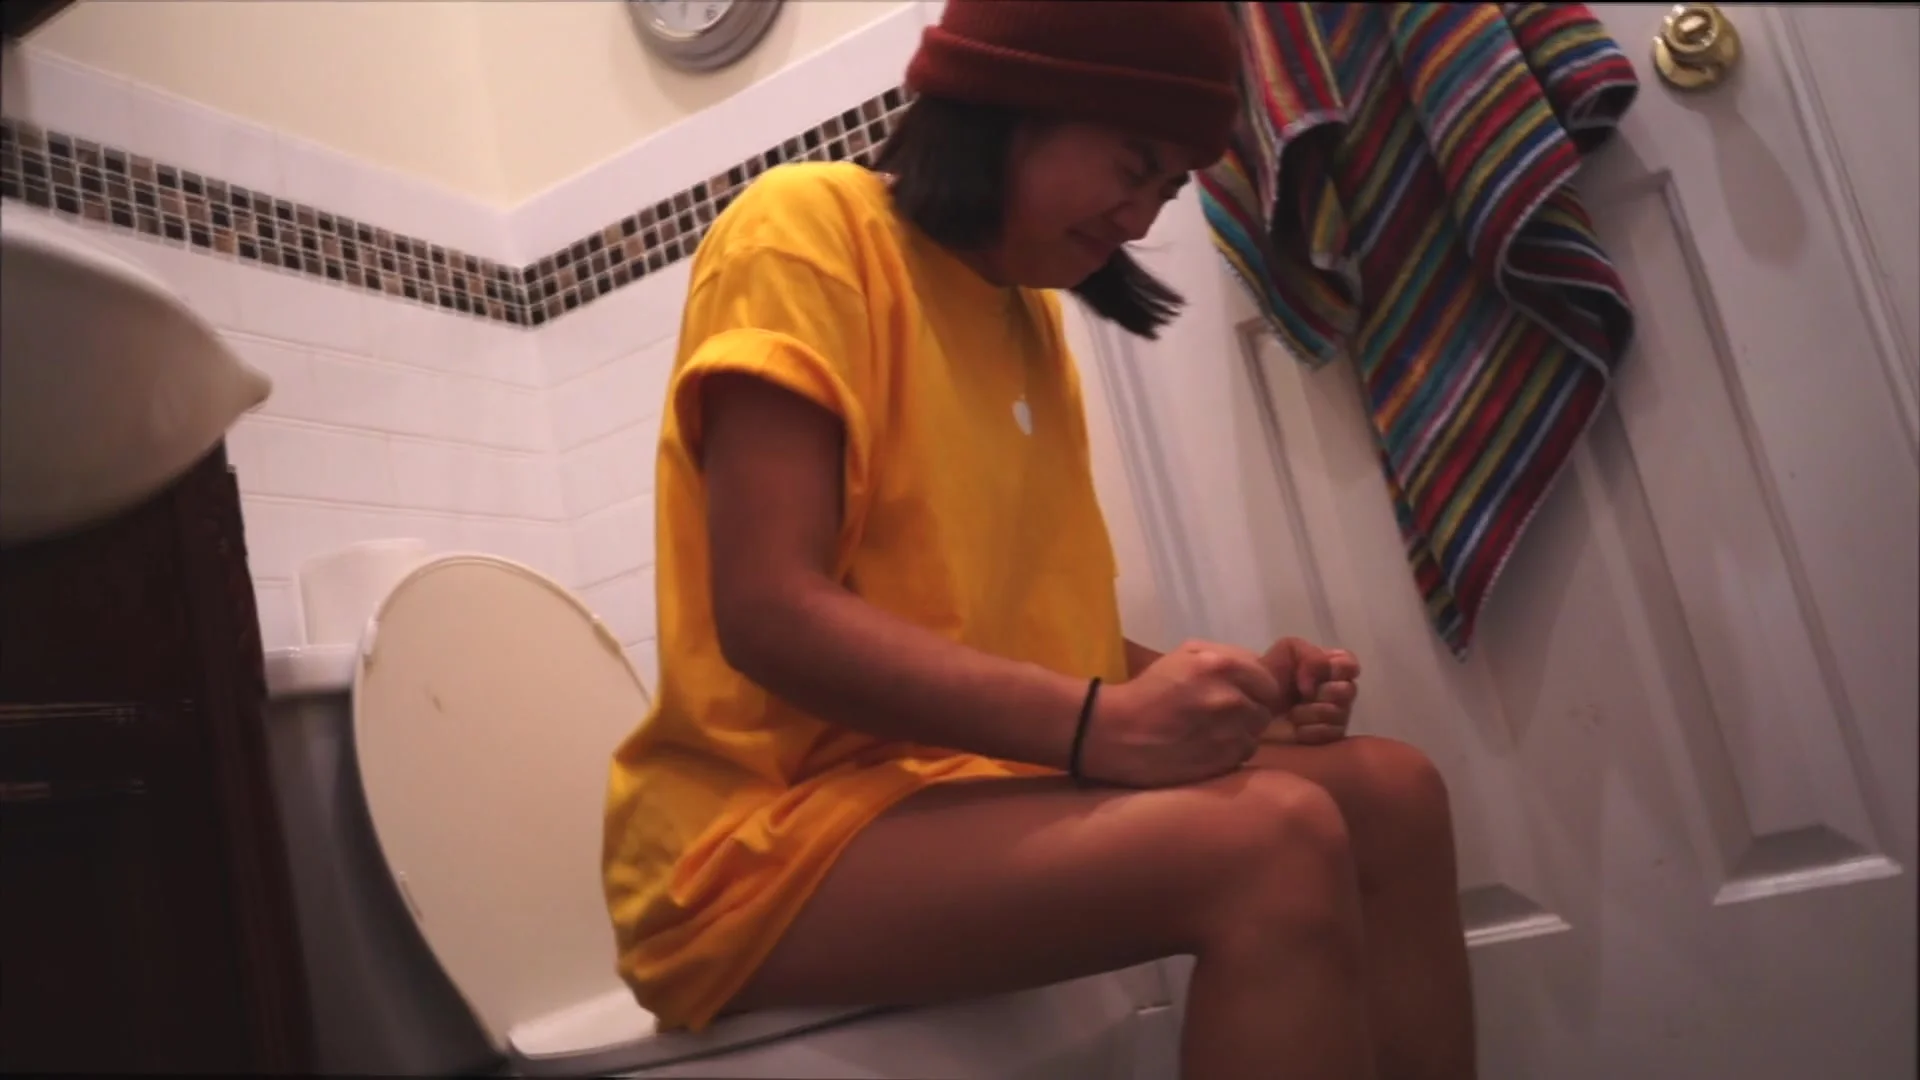 dana mertz recommends Asian Girls Pooping Videos